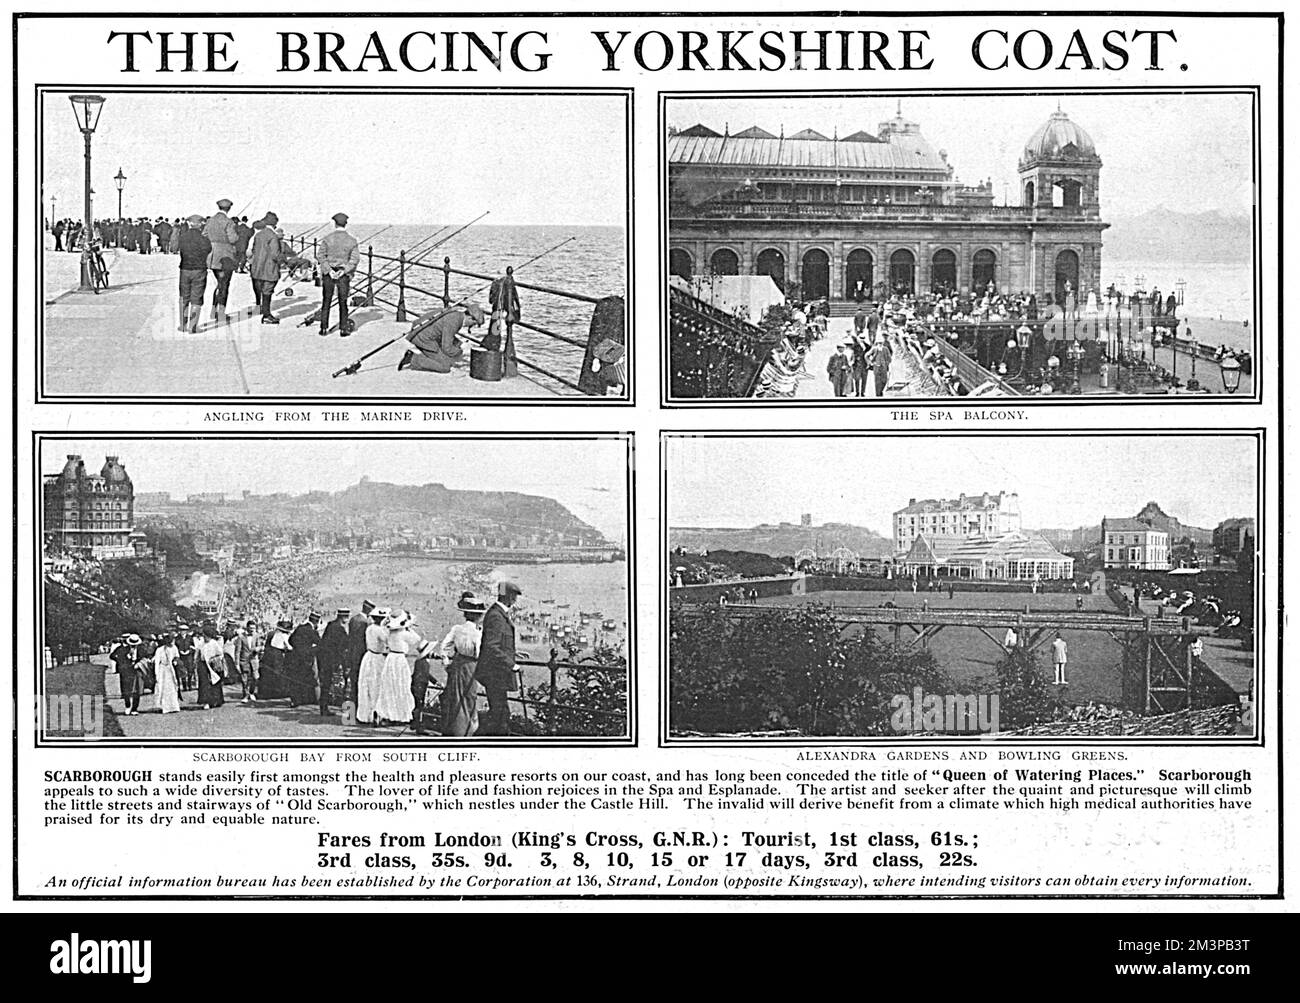 Werbung, in der die Freuden der rauschenden Yorkshire Küste als Urlaubsziel gepriesen werden, vor allem das Küstenresort Scarborough. Weniger als sechs Monate später, nach dem Ausbruch des Ersten Weltkriegs, würde die Stadt von deutschen Schiffen bombardiert. Datum: 1914 Stockfoto